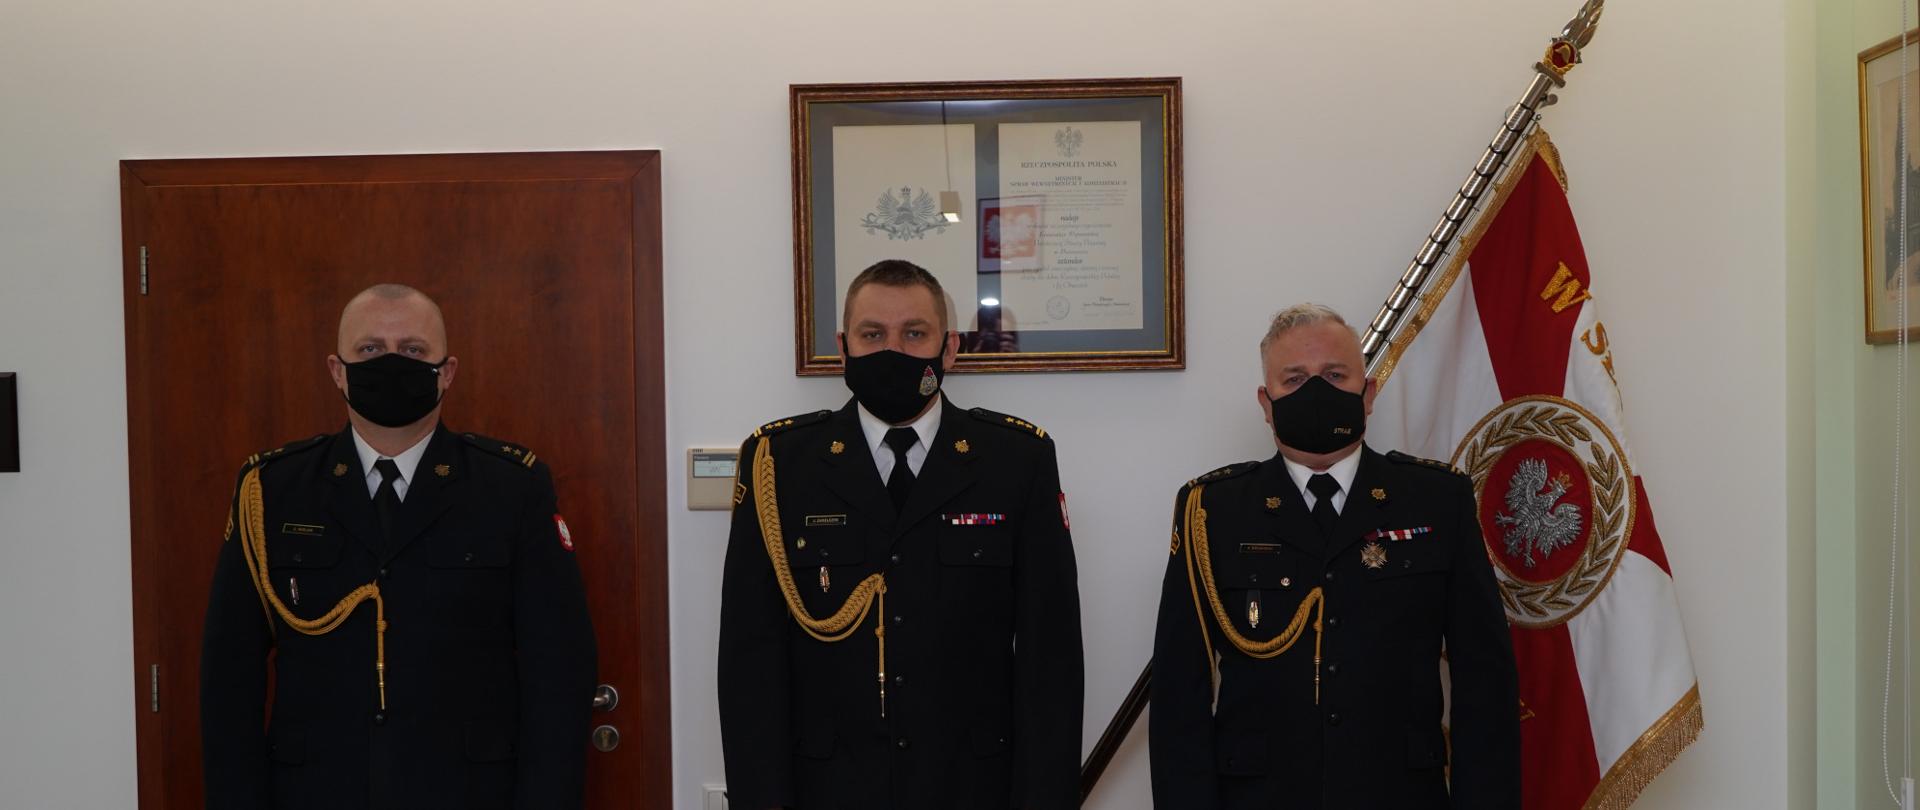 trzech strażaków stoi na baczność w ciemnych mundurach ze sznurem, białej koszuli z carnym krawatem, na twarzy mają maseczki ochronne, w tle sztandar